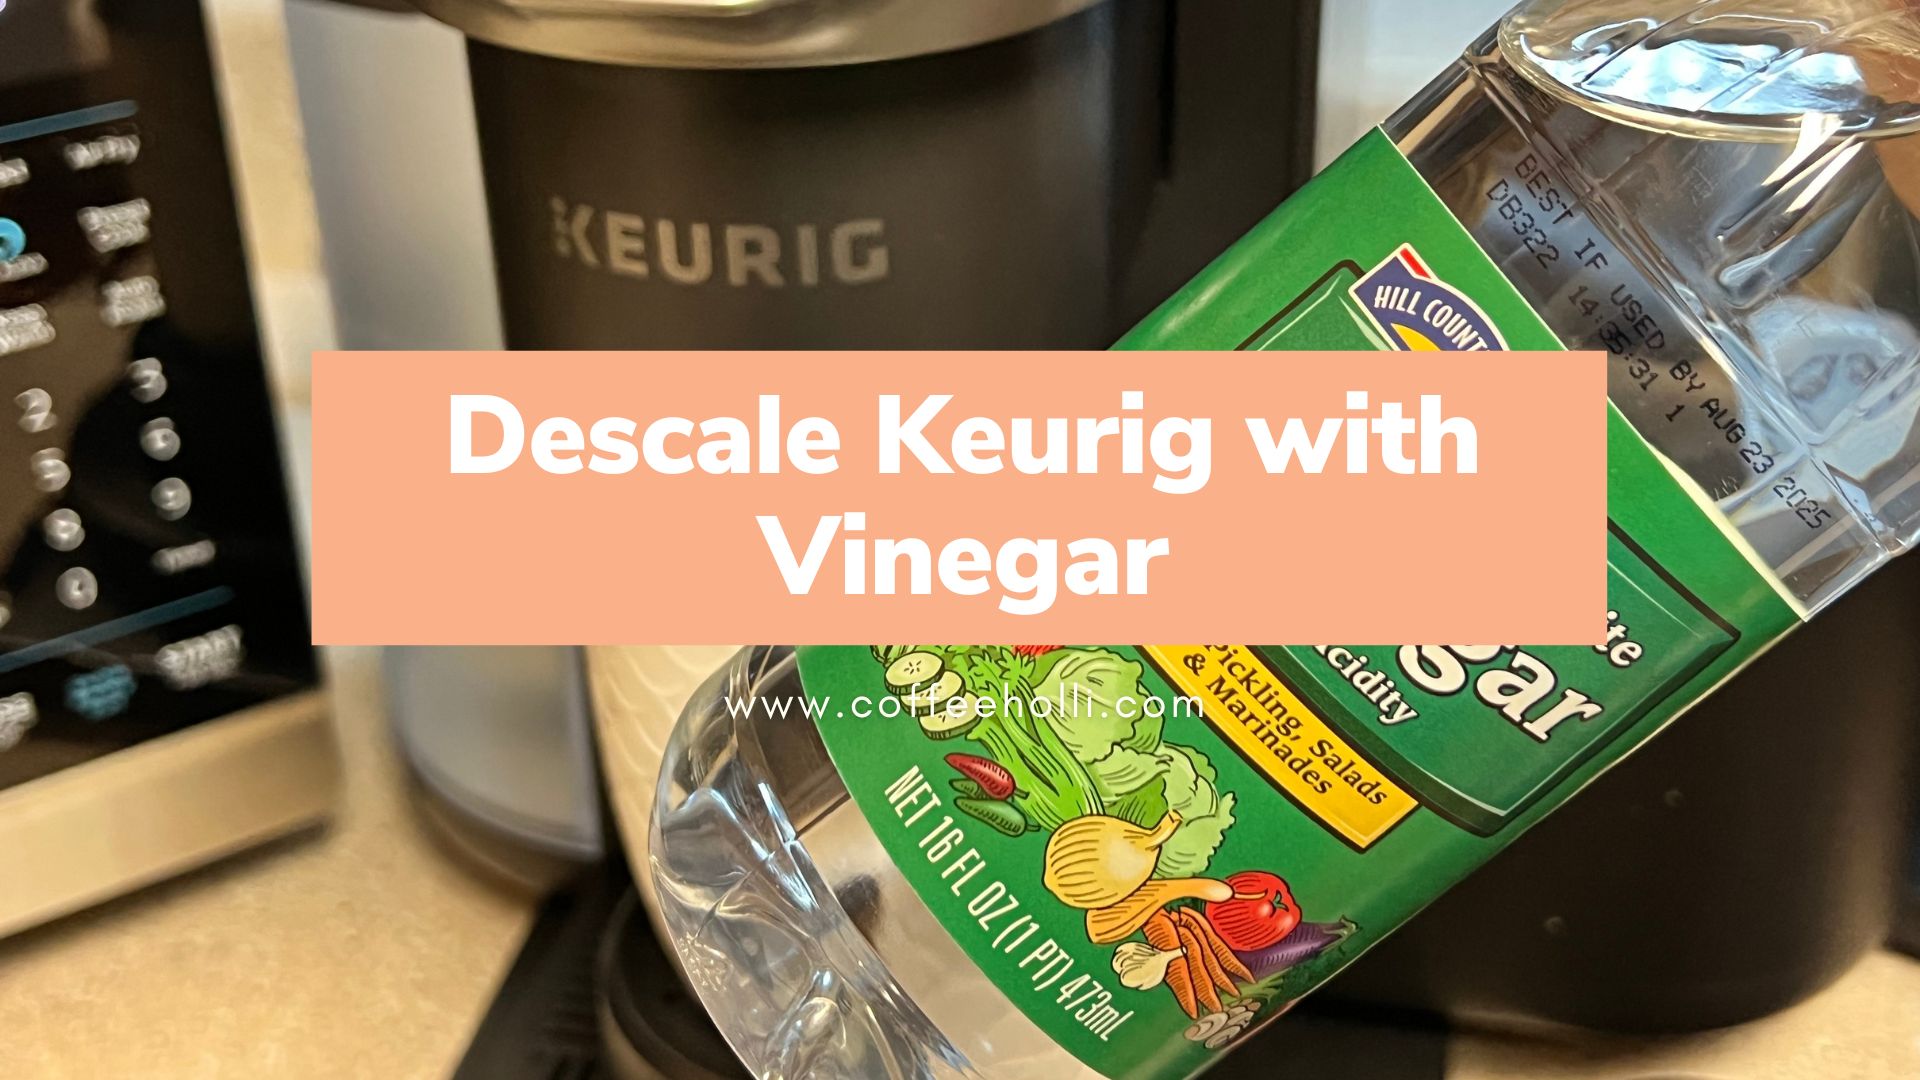 Descale Keurig with Vinegar